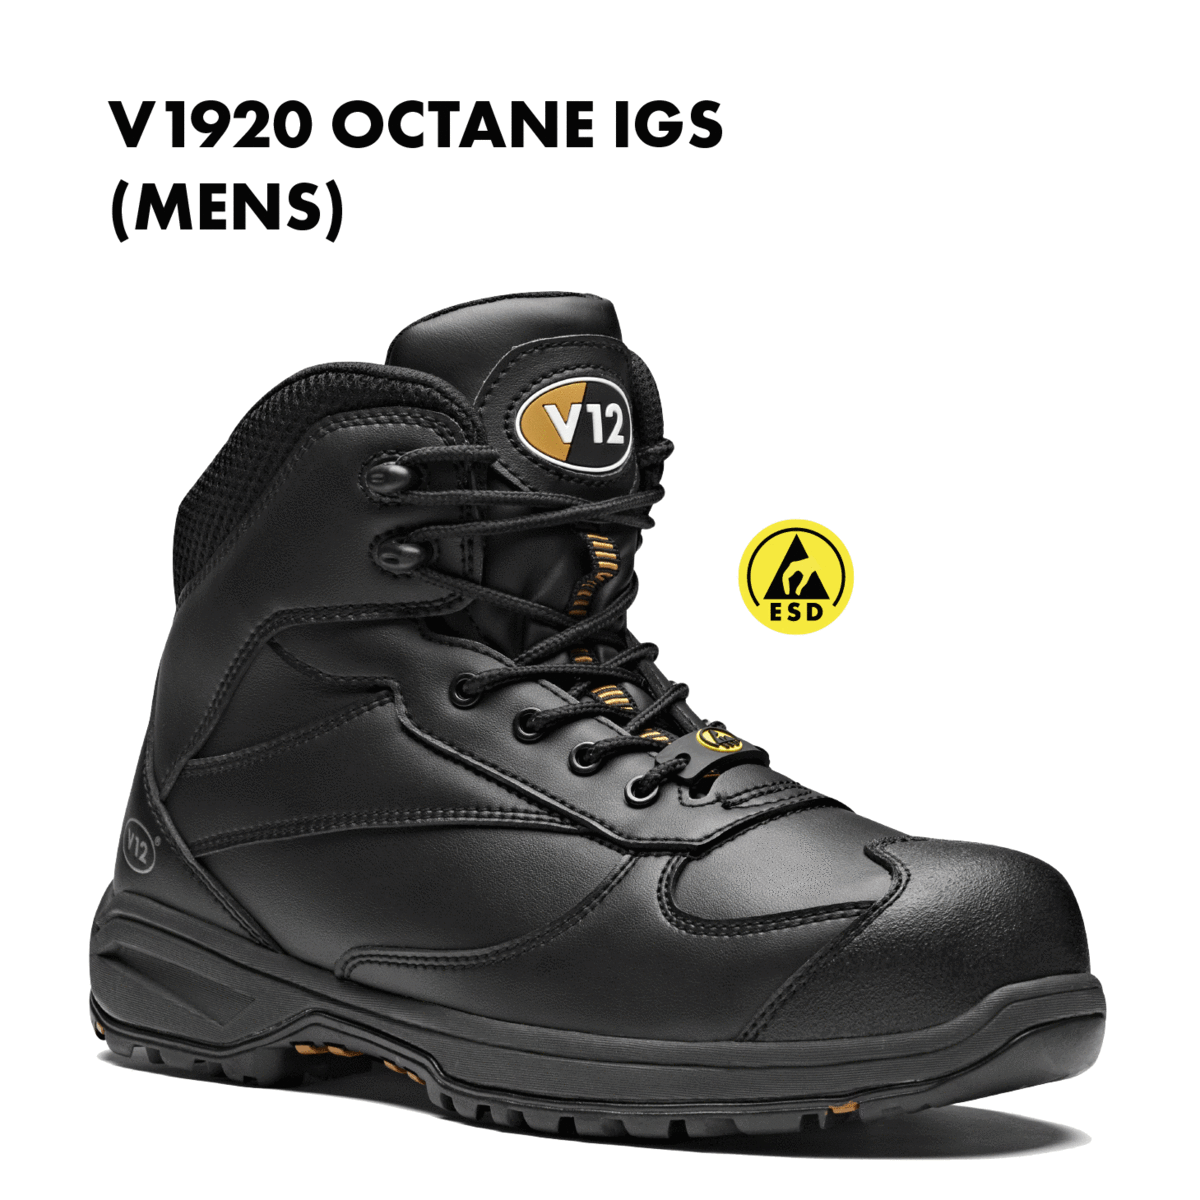 vegan steel toe cap boots uk